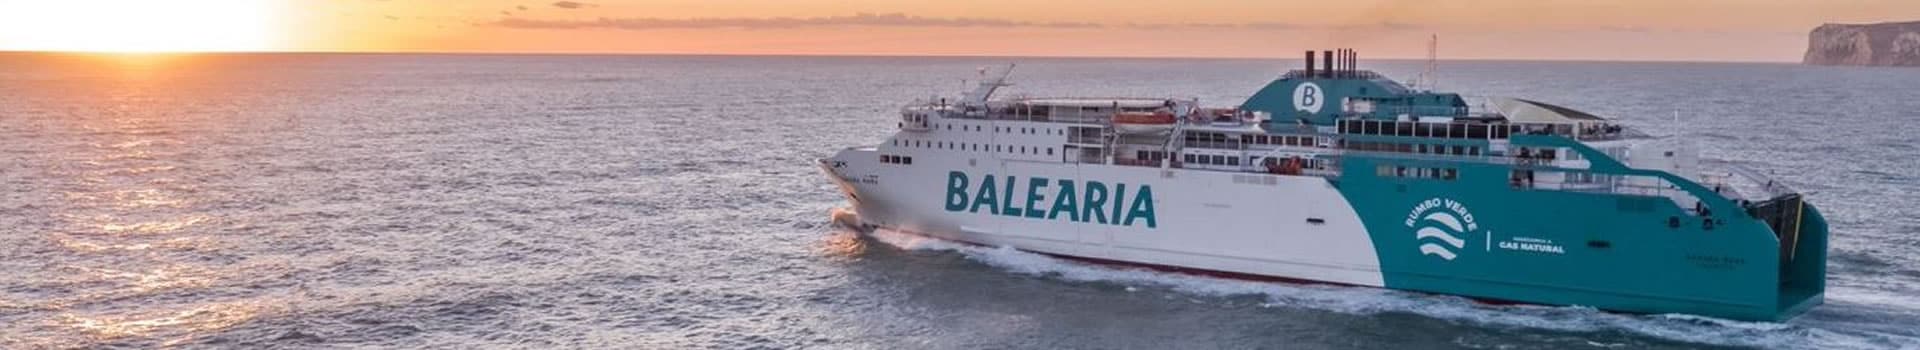 Les meilleures offres de ferries et bateaux de Baleària